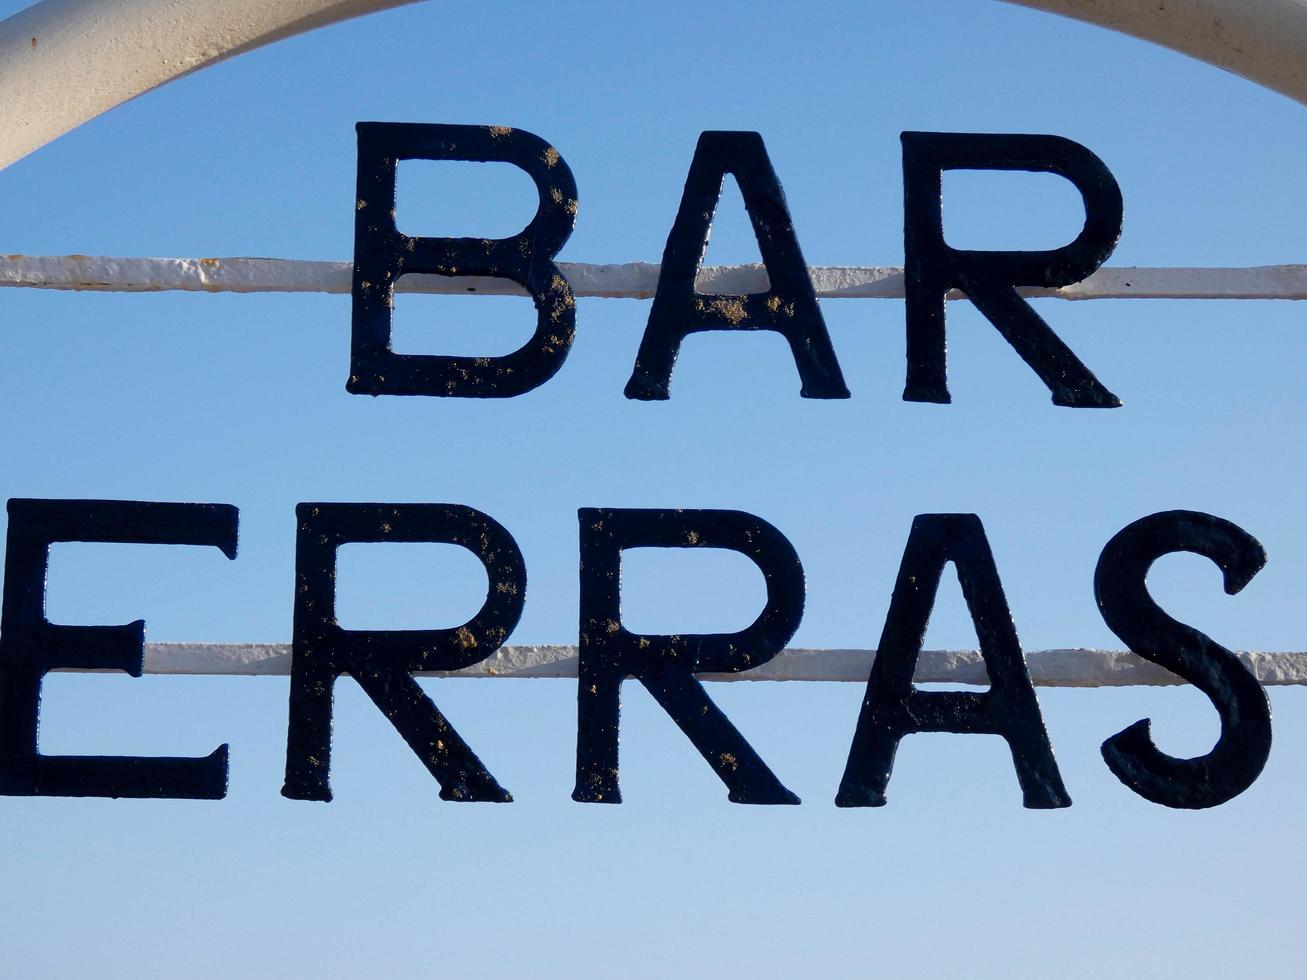 letrero de bar, terraza en la puerta de un bar en la playa foto